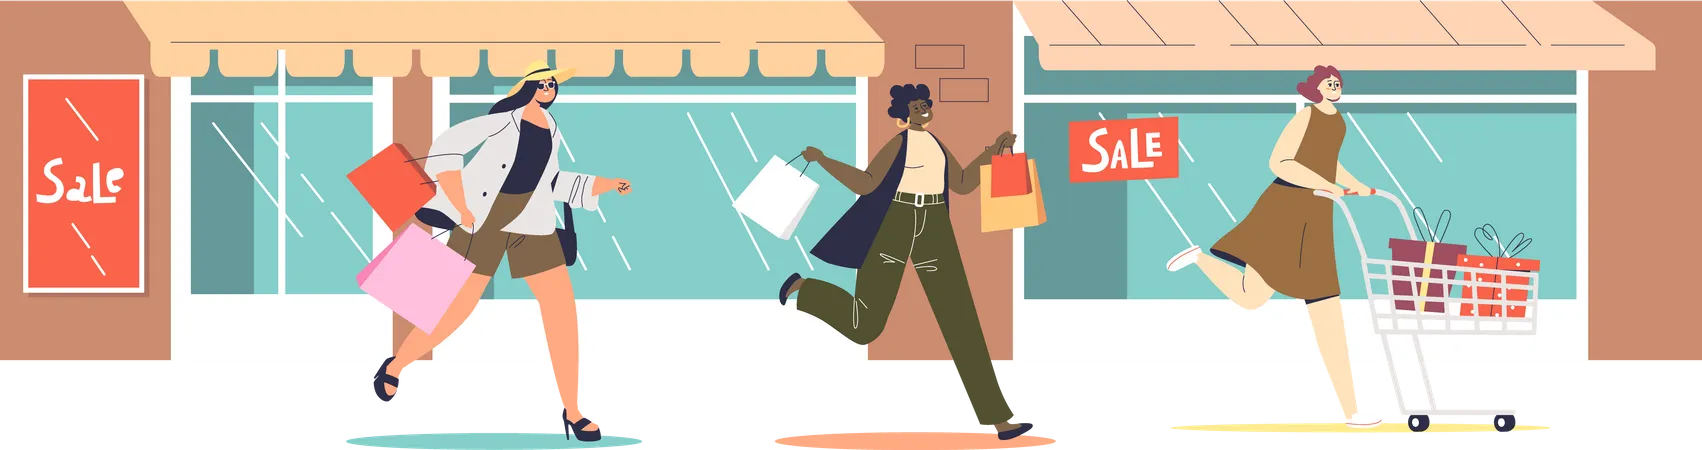 Women running for sales shopping  Illustration